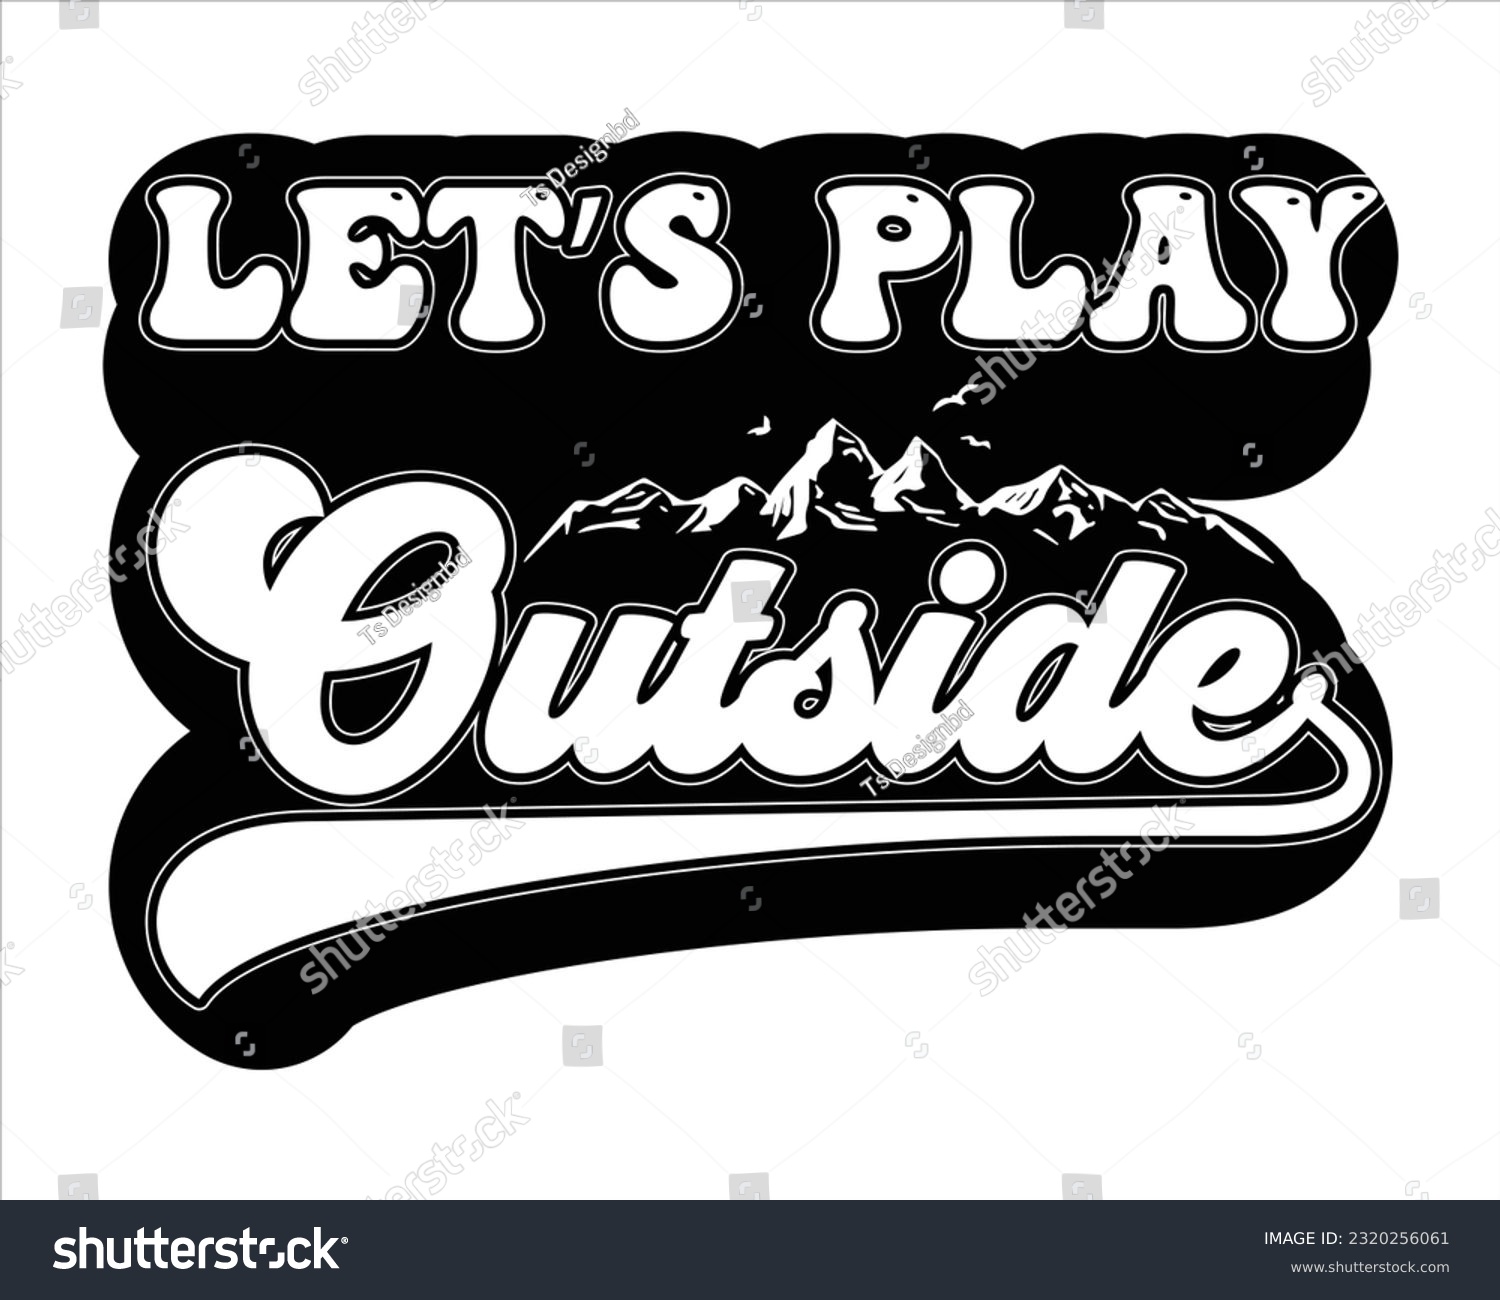 SVG of Let's Play Outside Svg Design, Hiking Svg Design, Mountain illustration, outdoor adventure ,Outdoor Adventure Inspiring Motivation Quote, camping, hiking svg